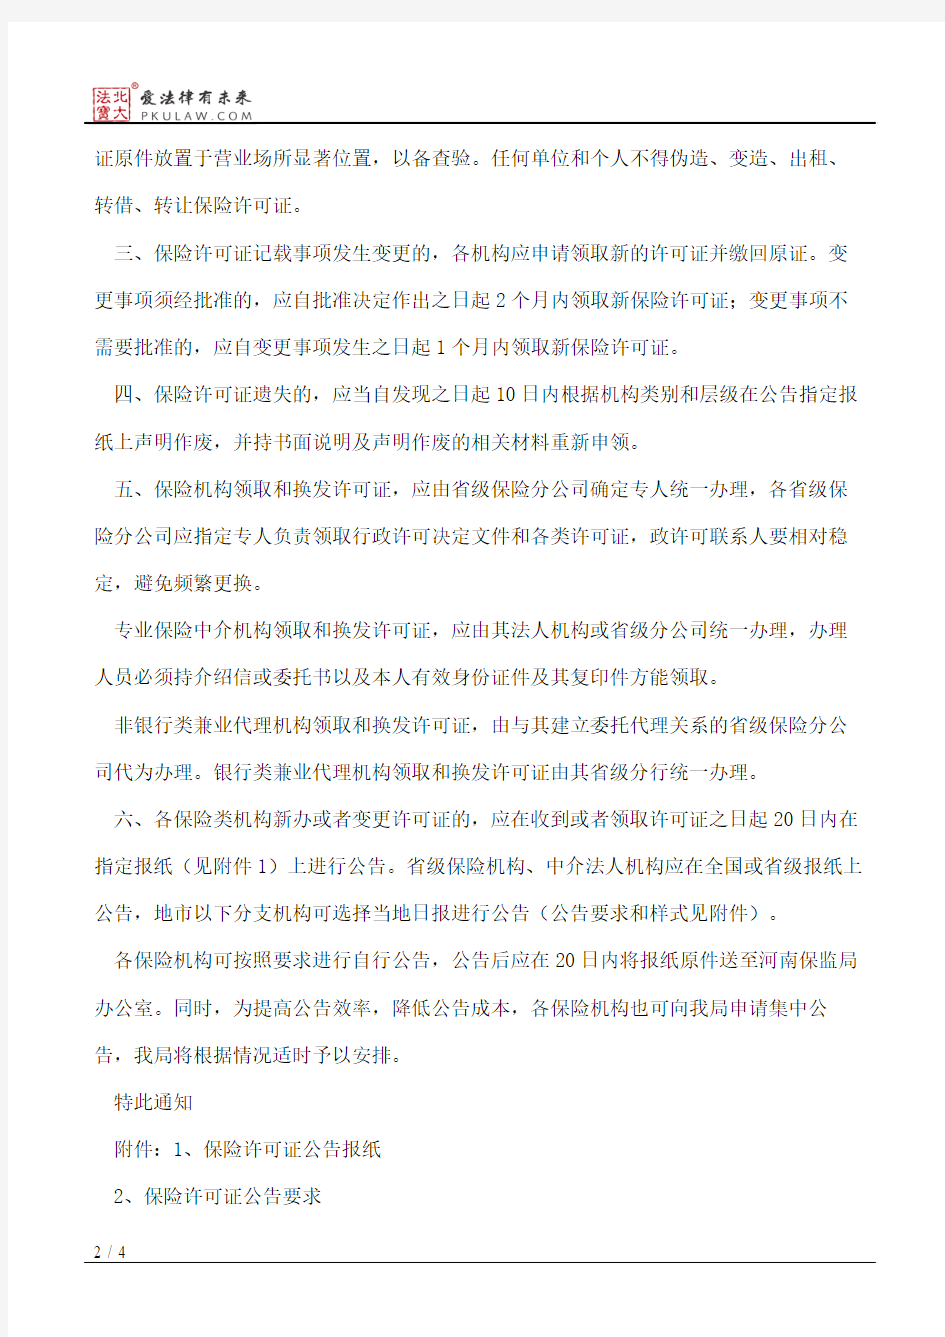 中国保险监督管理委员会河南监管局关于进一步加强保险许可证管理的通知